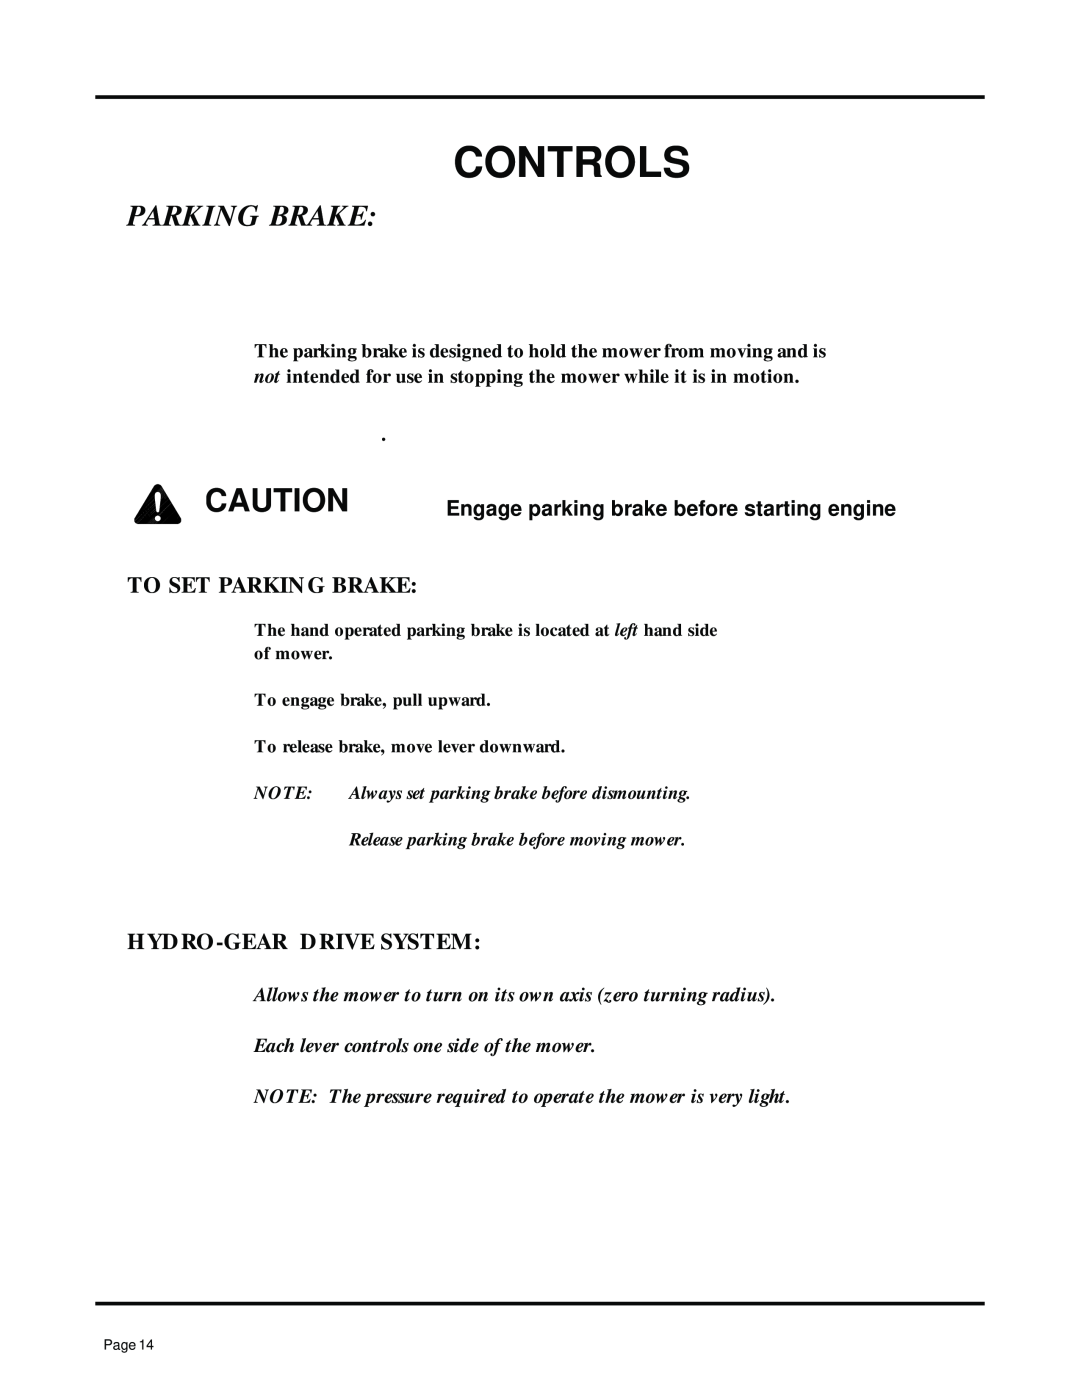 Dixon ZTR 7025, 13091-0500 manual Parking Brake, Controls, Engage parking brake before starting engine 